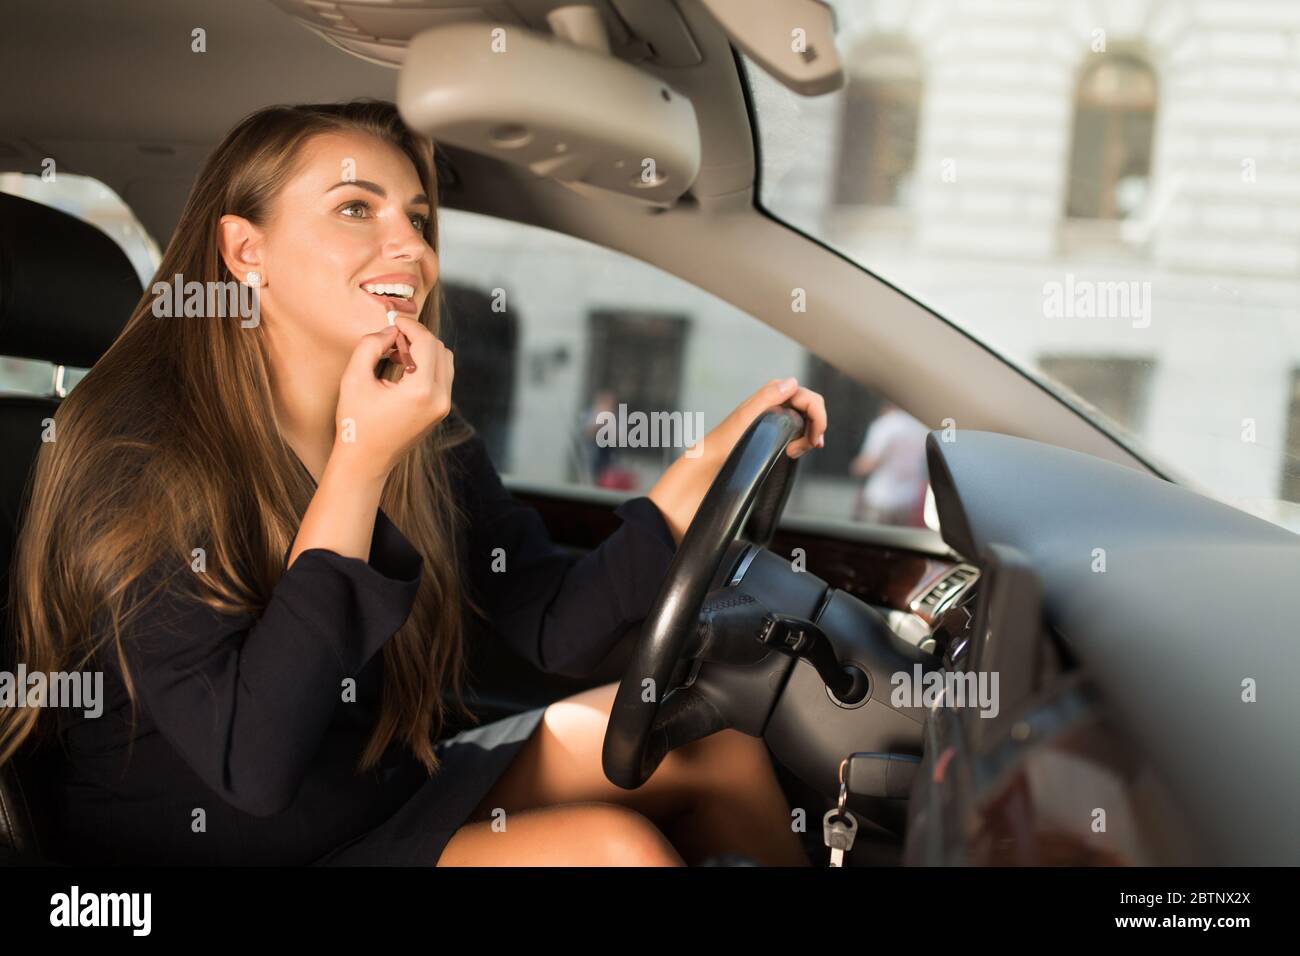 Frau mit Lippen im Schminkspiegel, während sie im Auto sitzt. - ein  lizenzfreies Stock Foto von Photocase